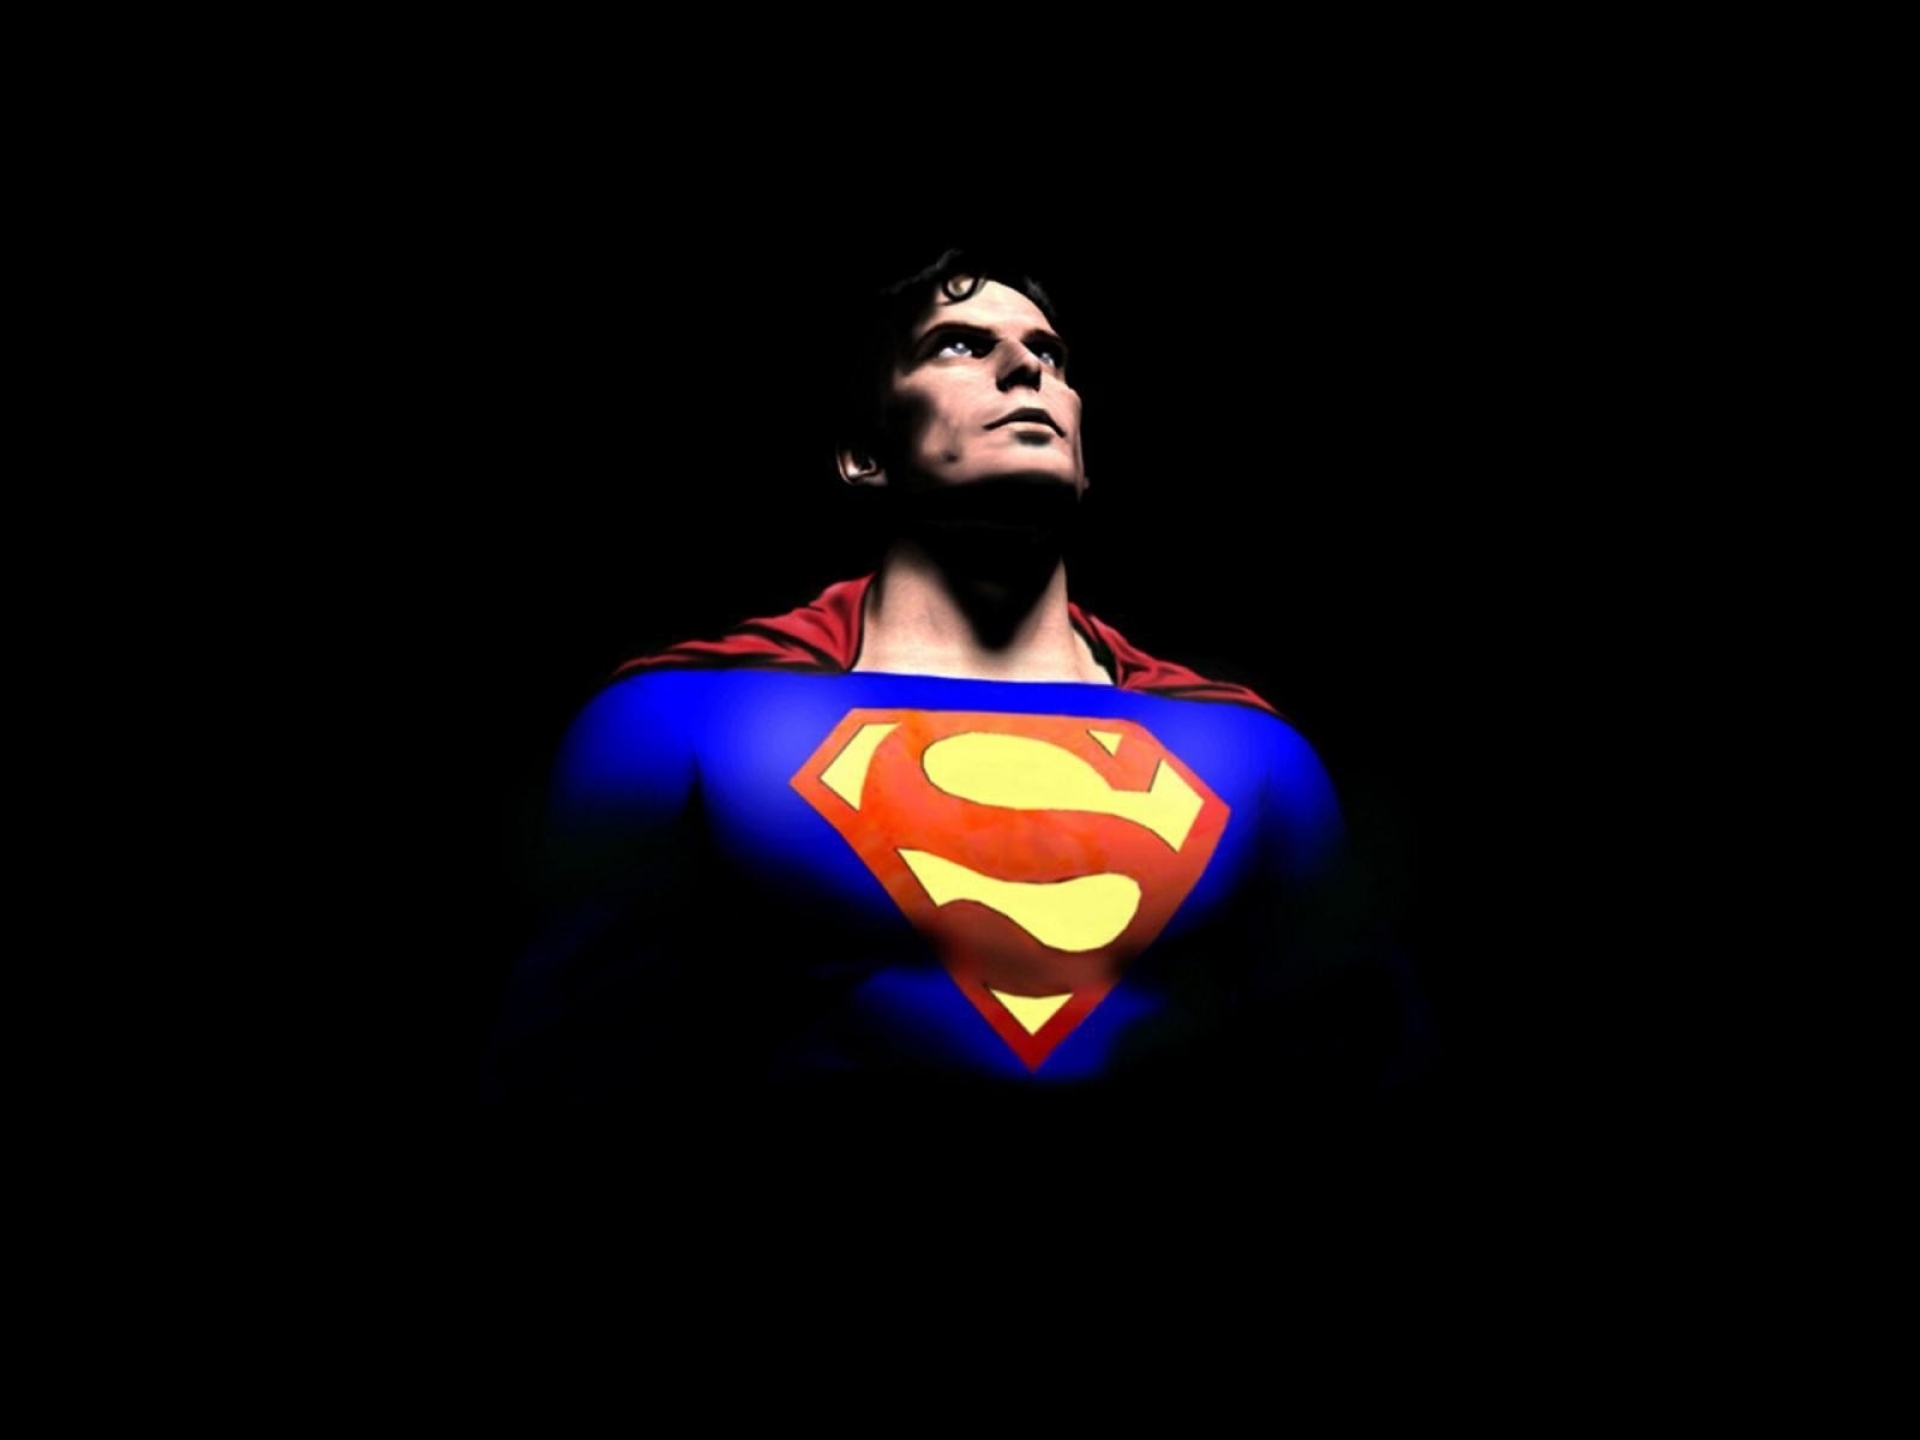 Superhero has. Кларк Кент Супермен. Супермен обои. Супермен картинки. Картина Супермен.